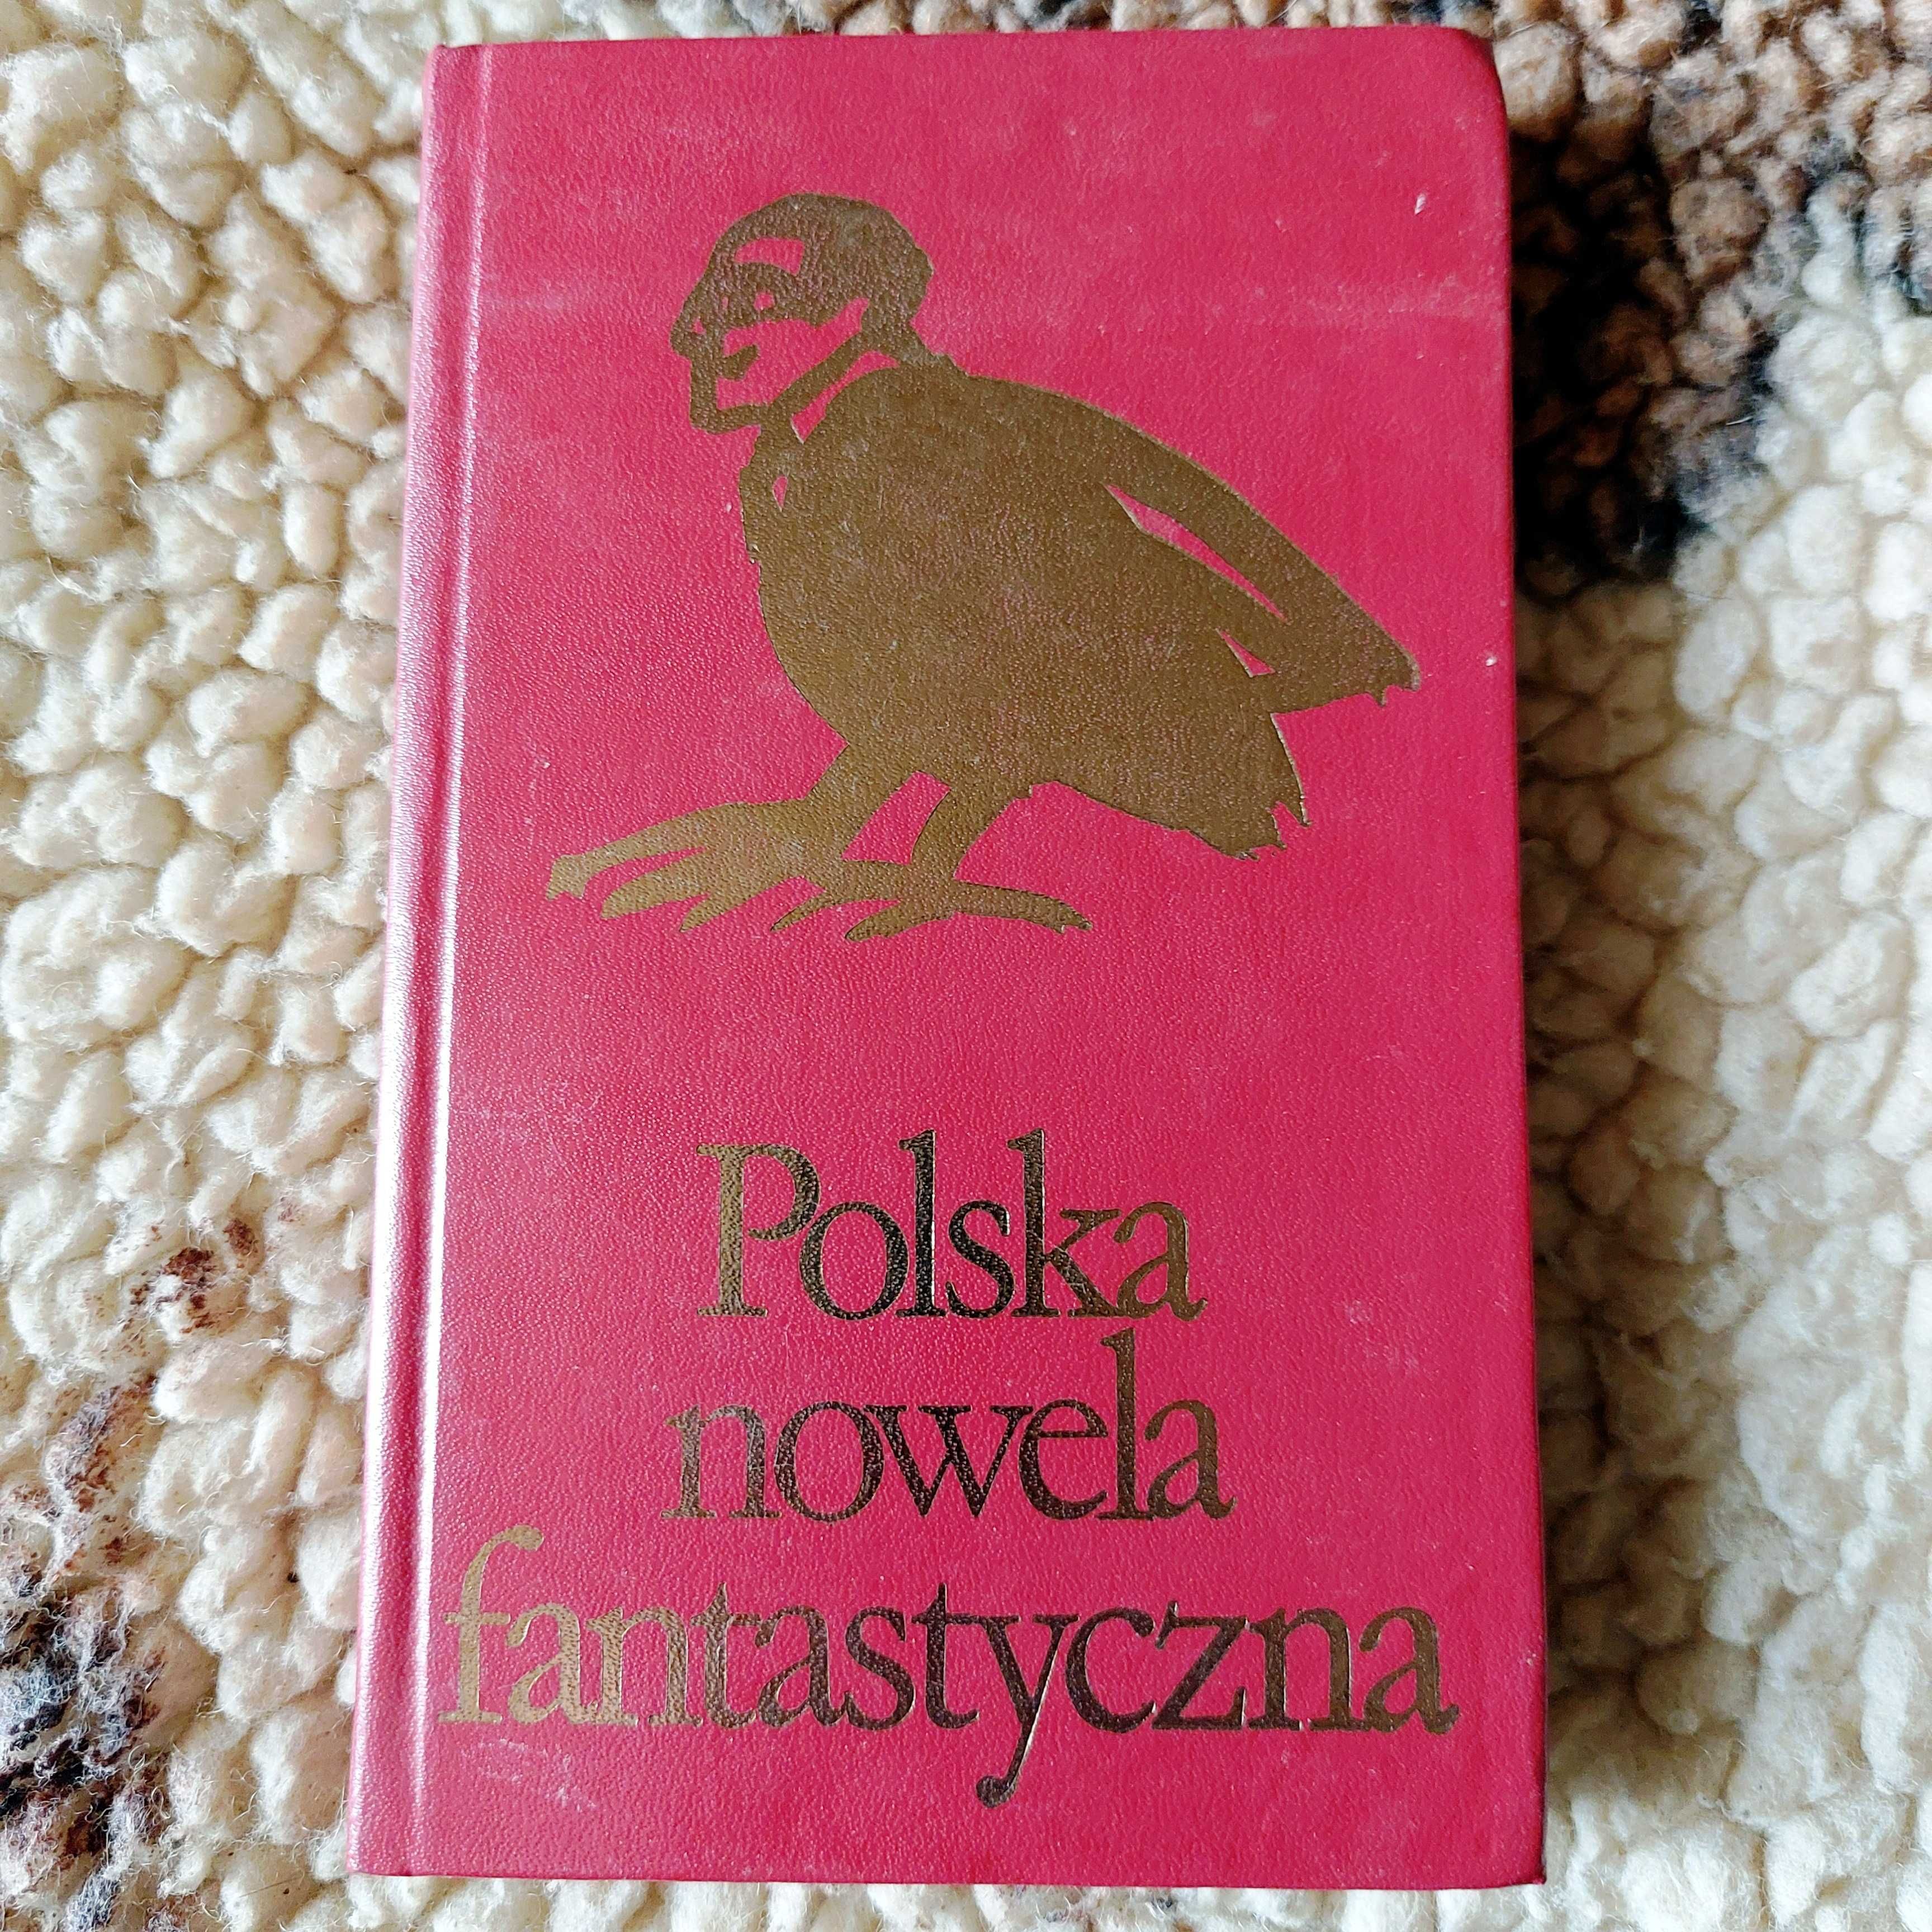 POLSKA NOWELA FANTASTYCZNA | klasyczna książka w twardej oprawie